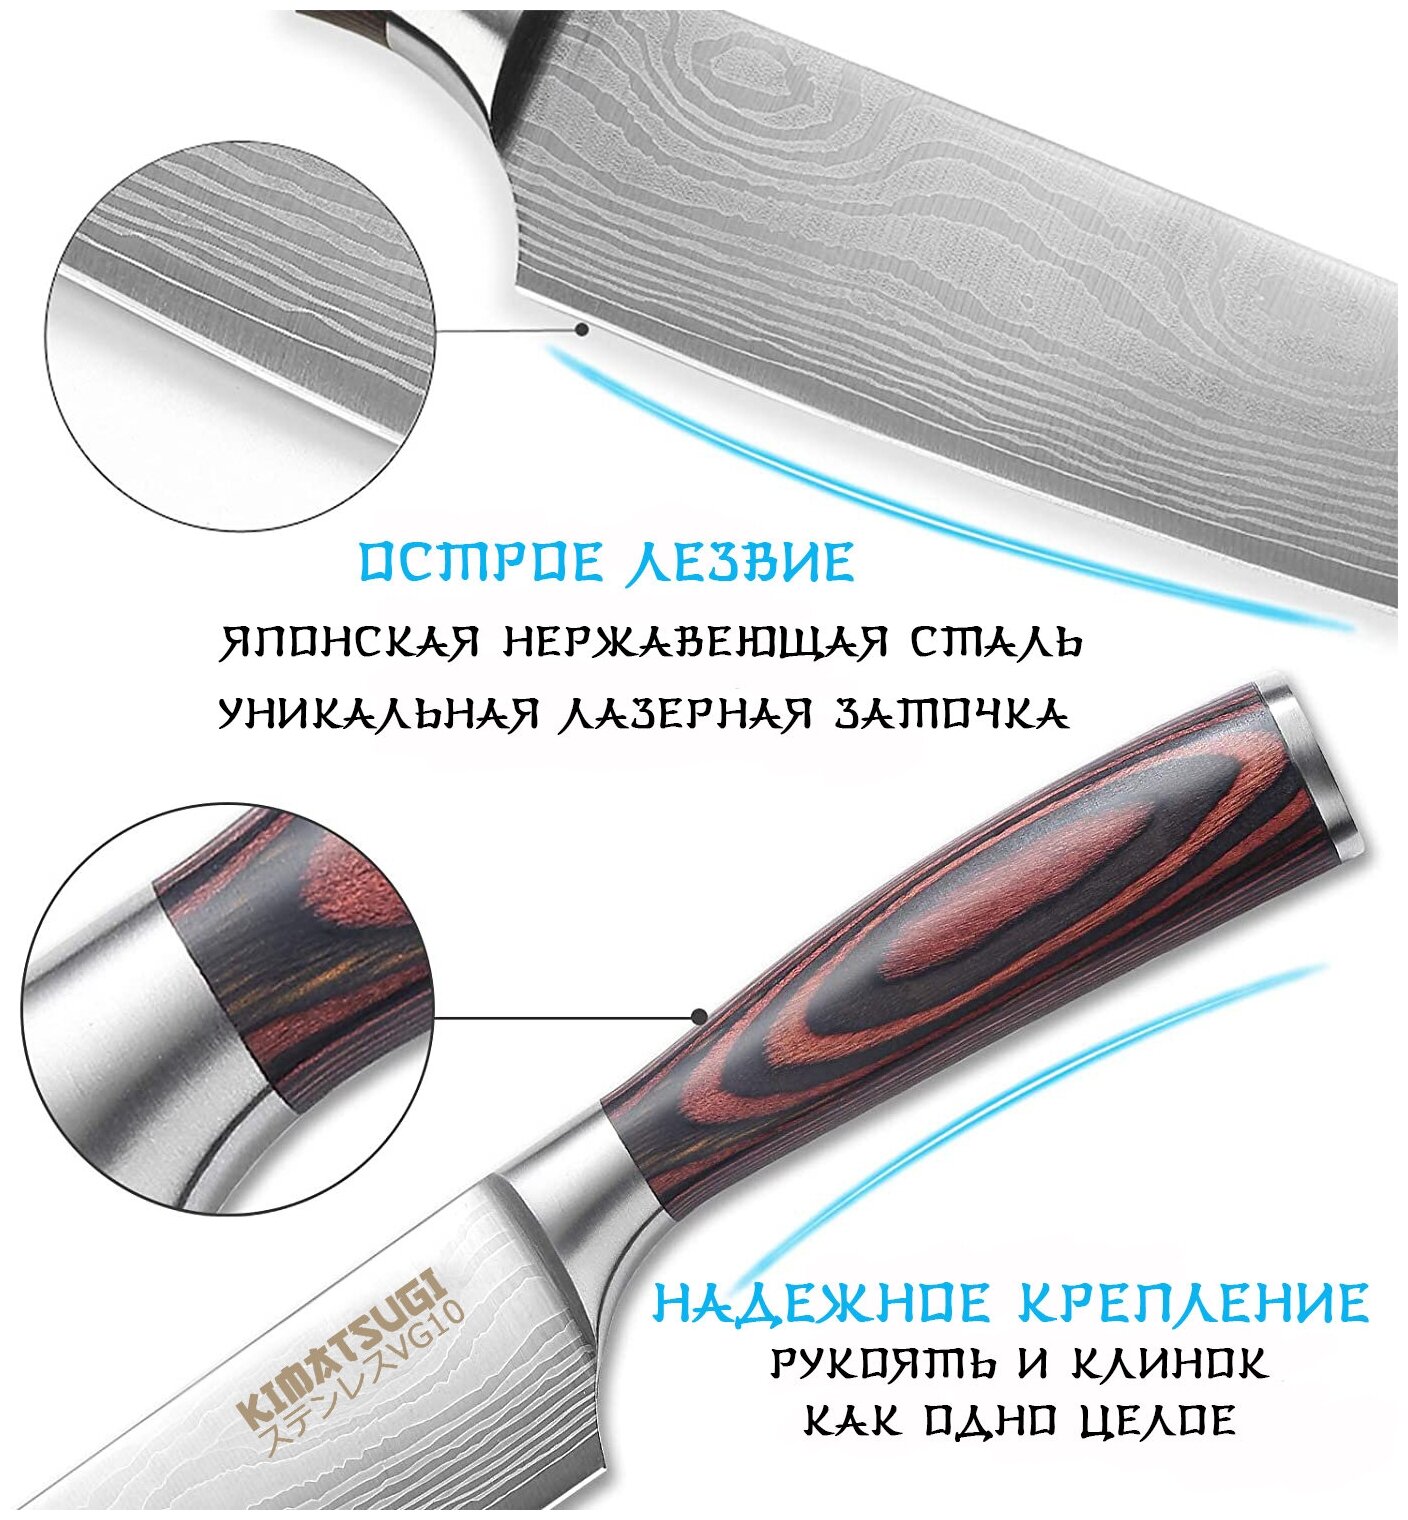 Набор японских кухонных ножей Kimatsugi / Японская сталь VG10 / 3 предмета / Каждый нож в ножнах